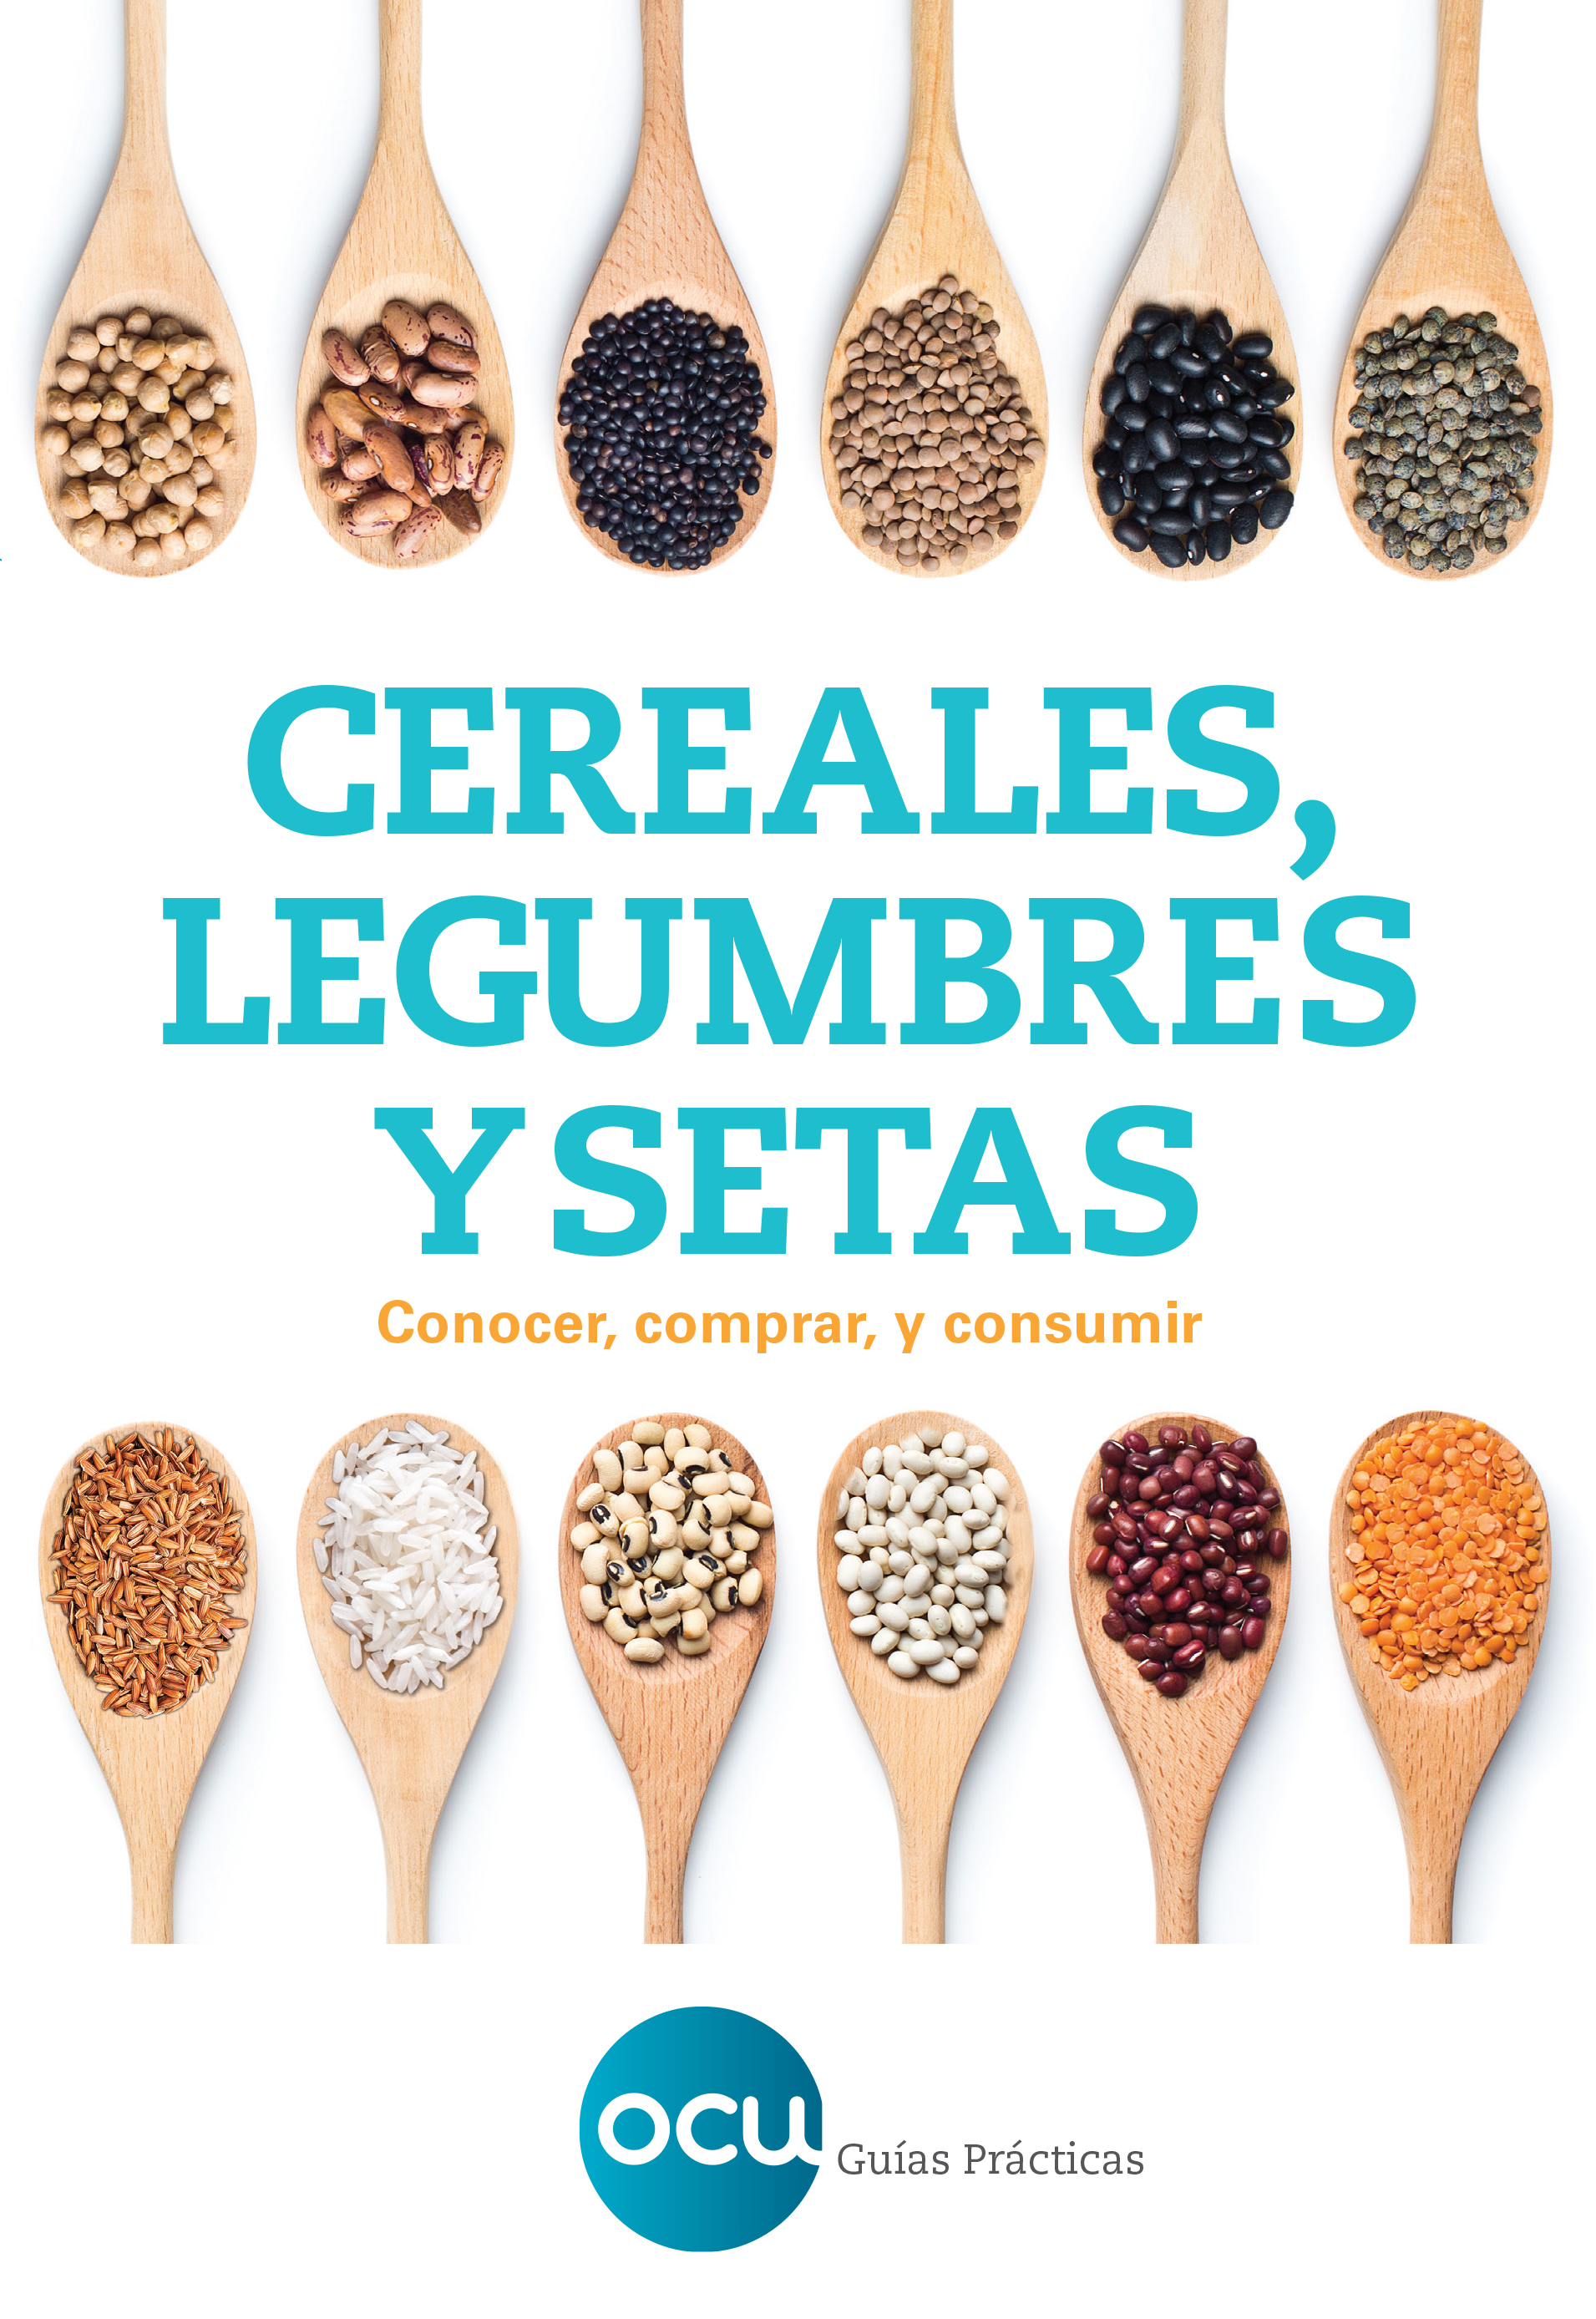 OCU guia pratica: Cereales, legumbres y setas